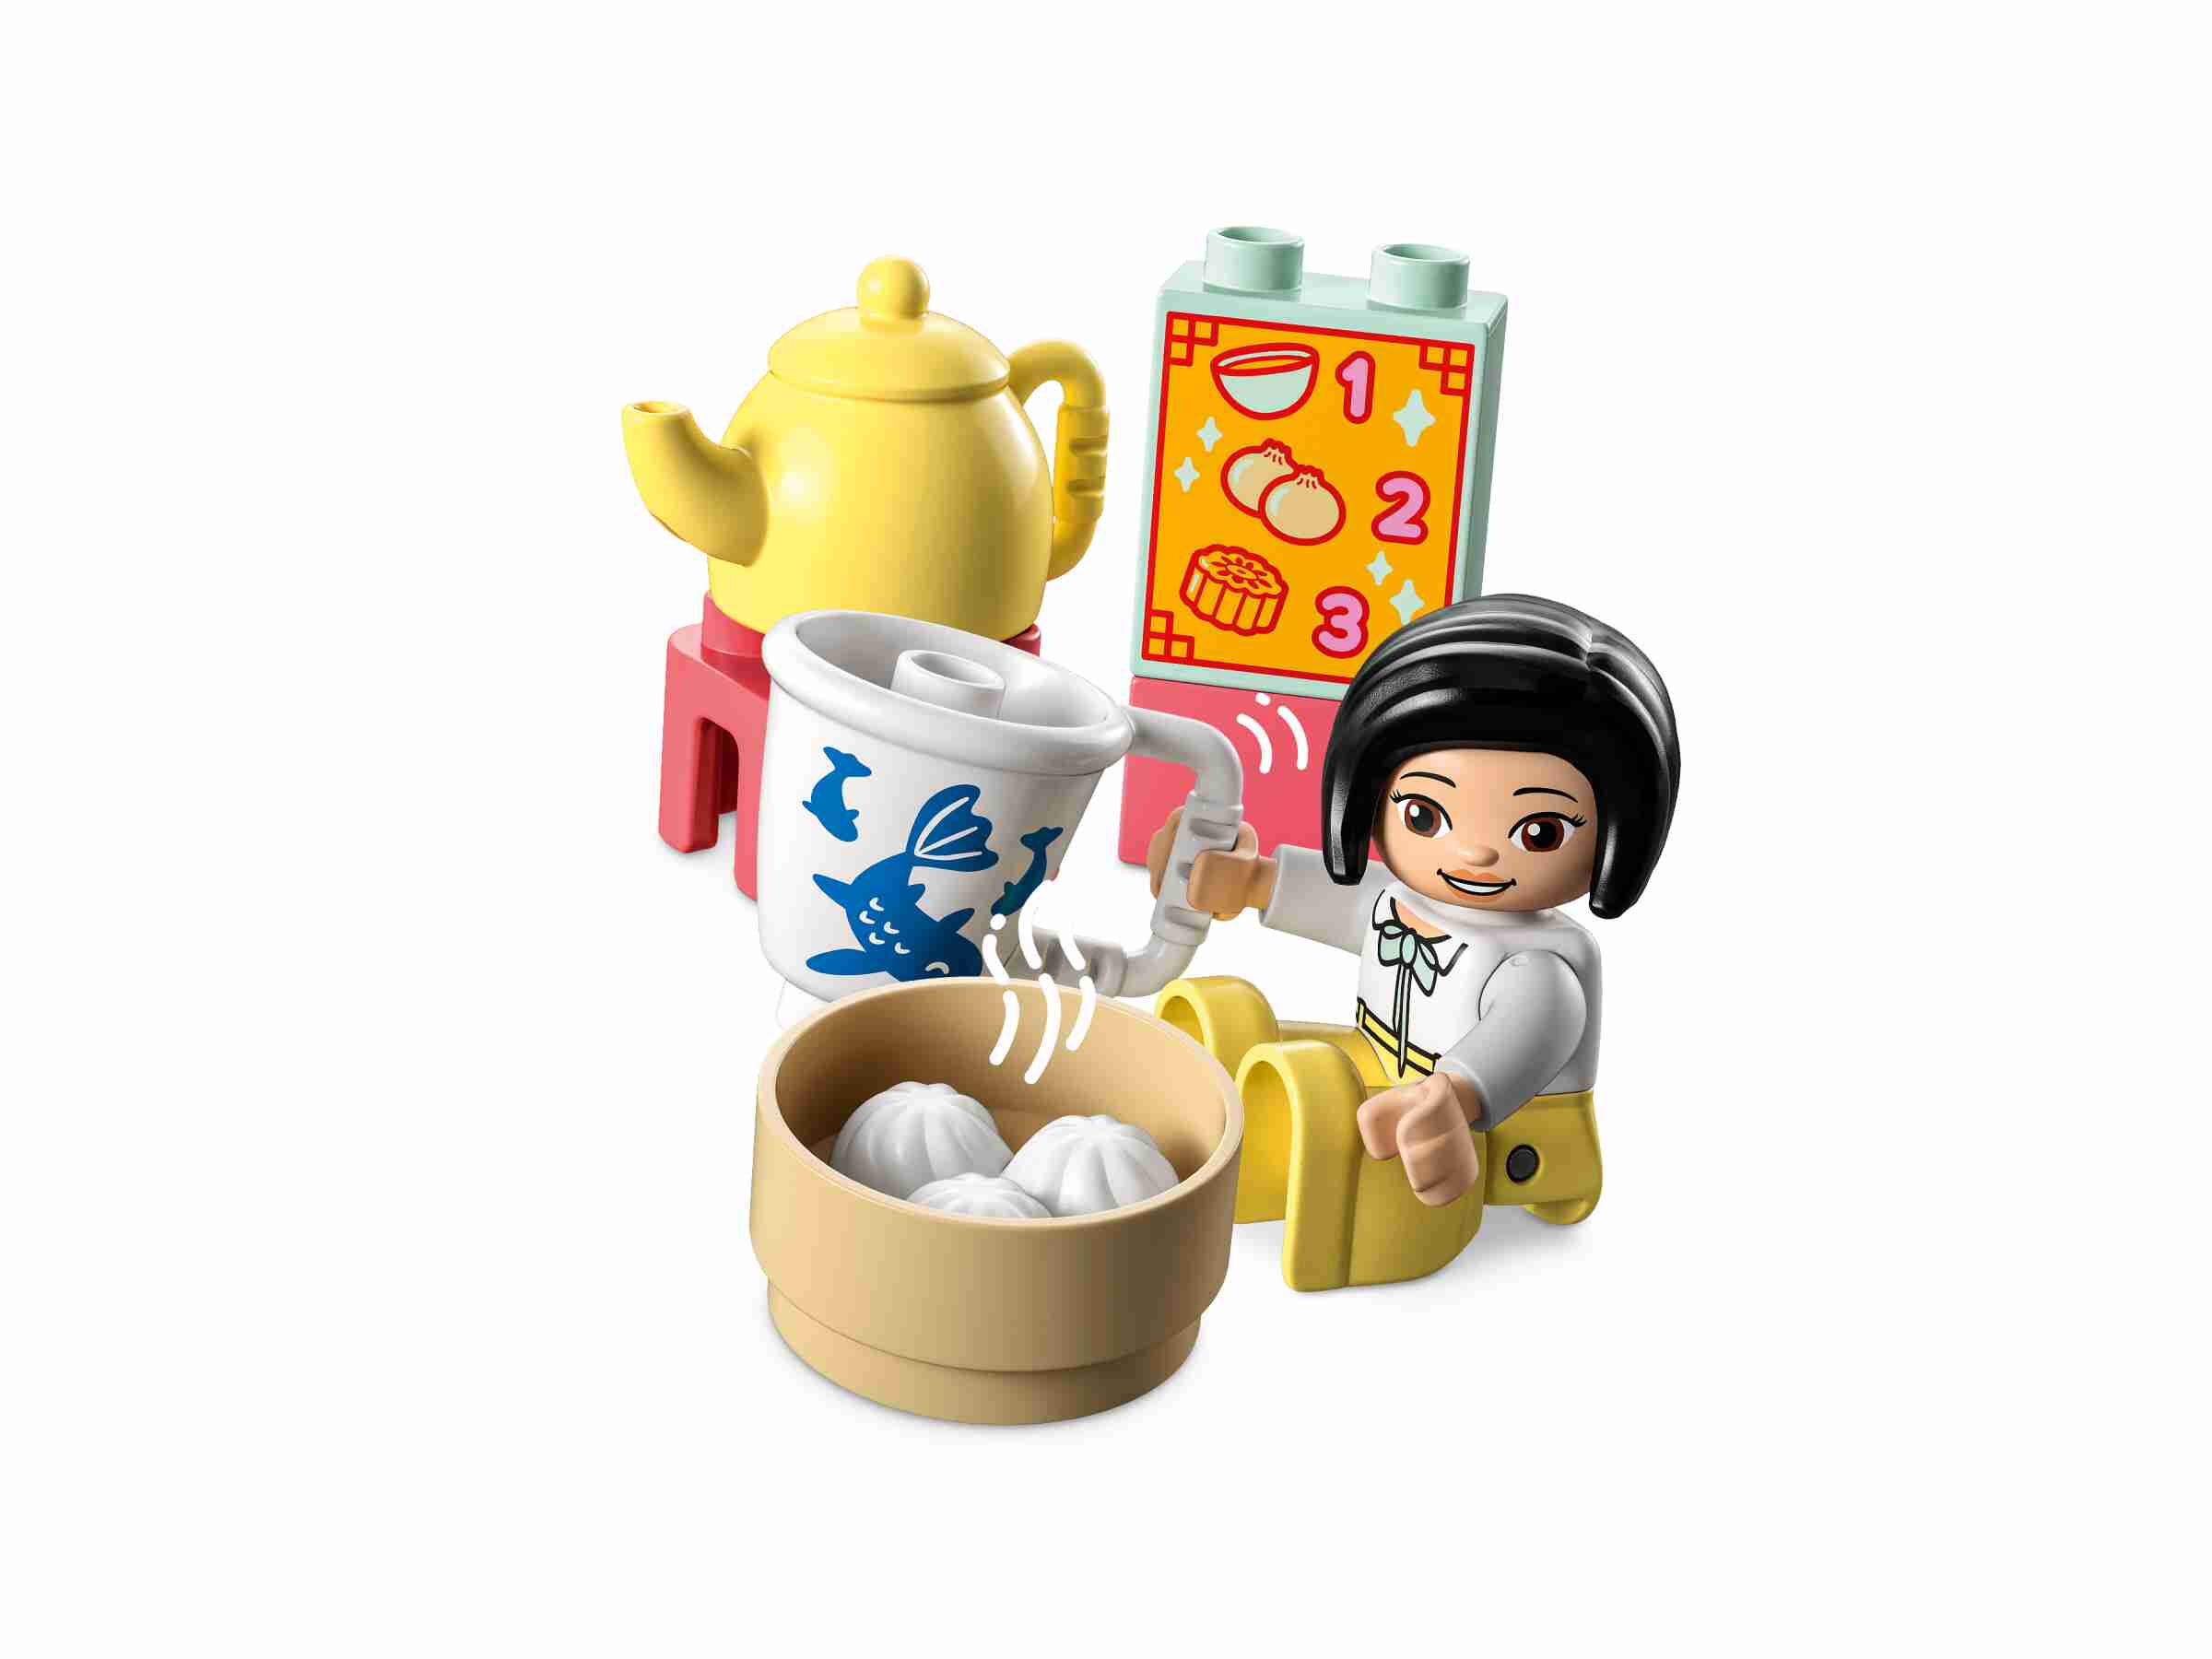 LEGO 10411 DUPLO Lerne etwas über die chinesische Kultur, Bräuche, Café,Tempel 